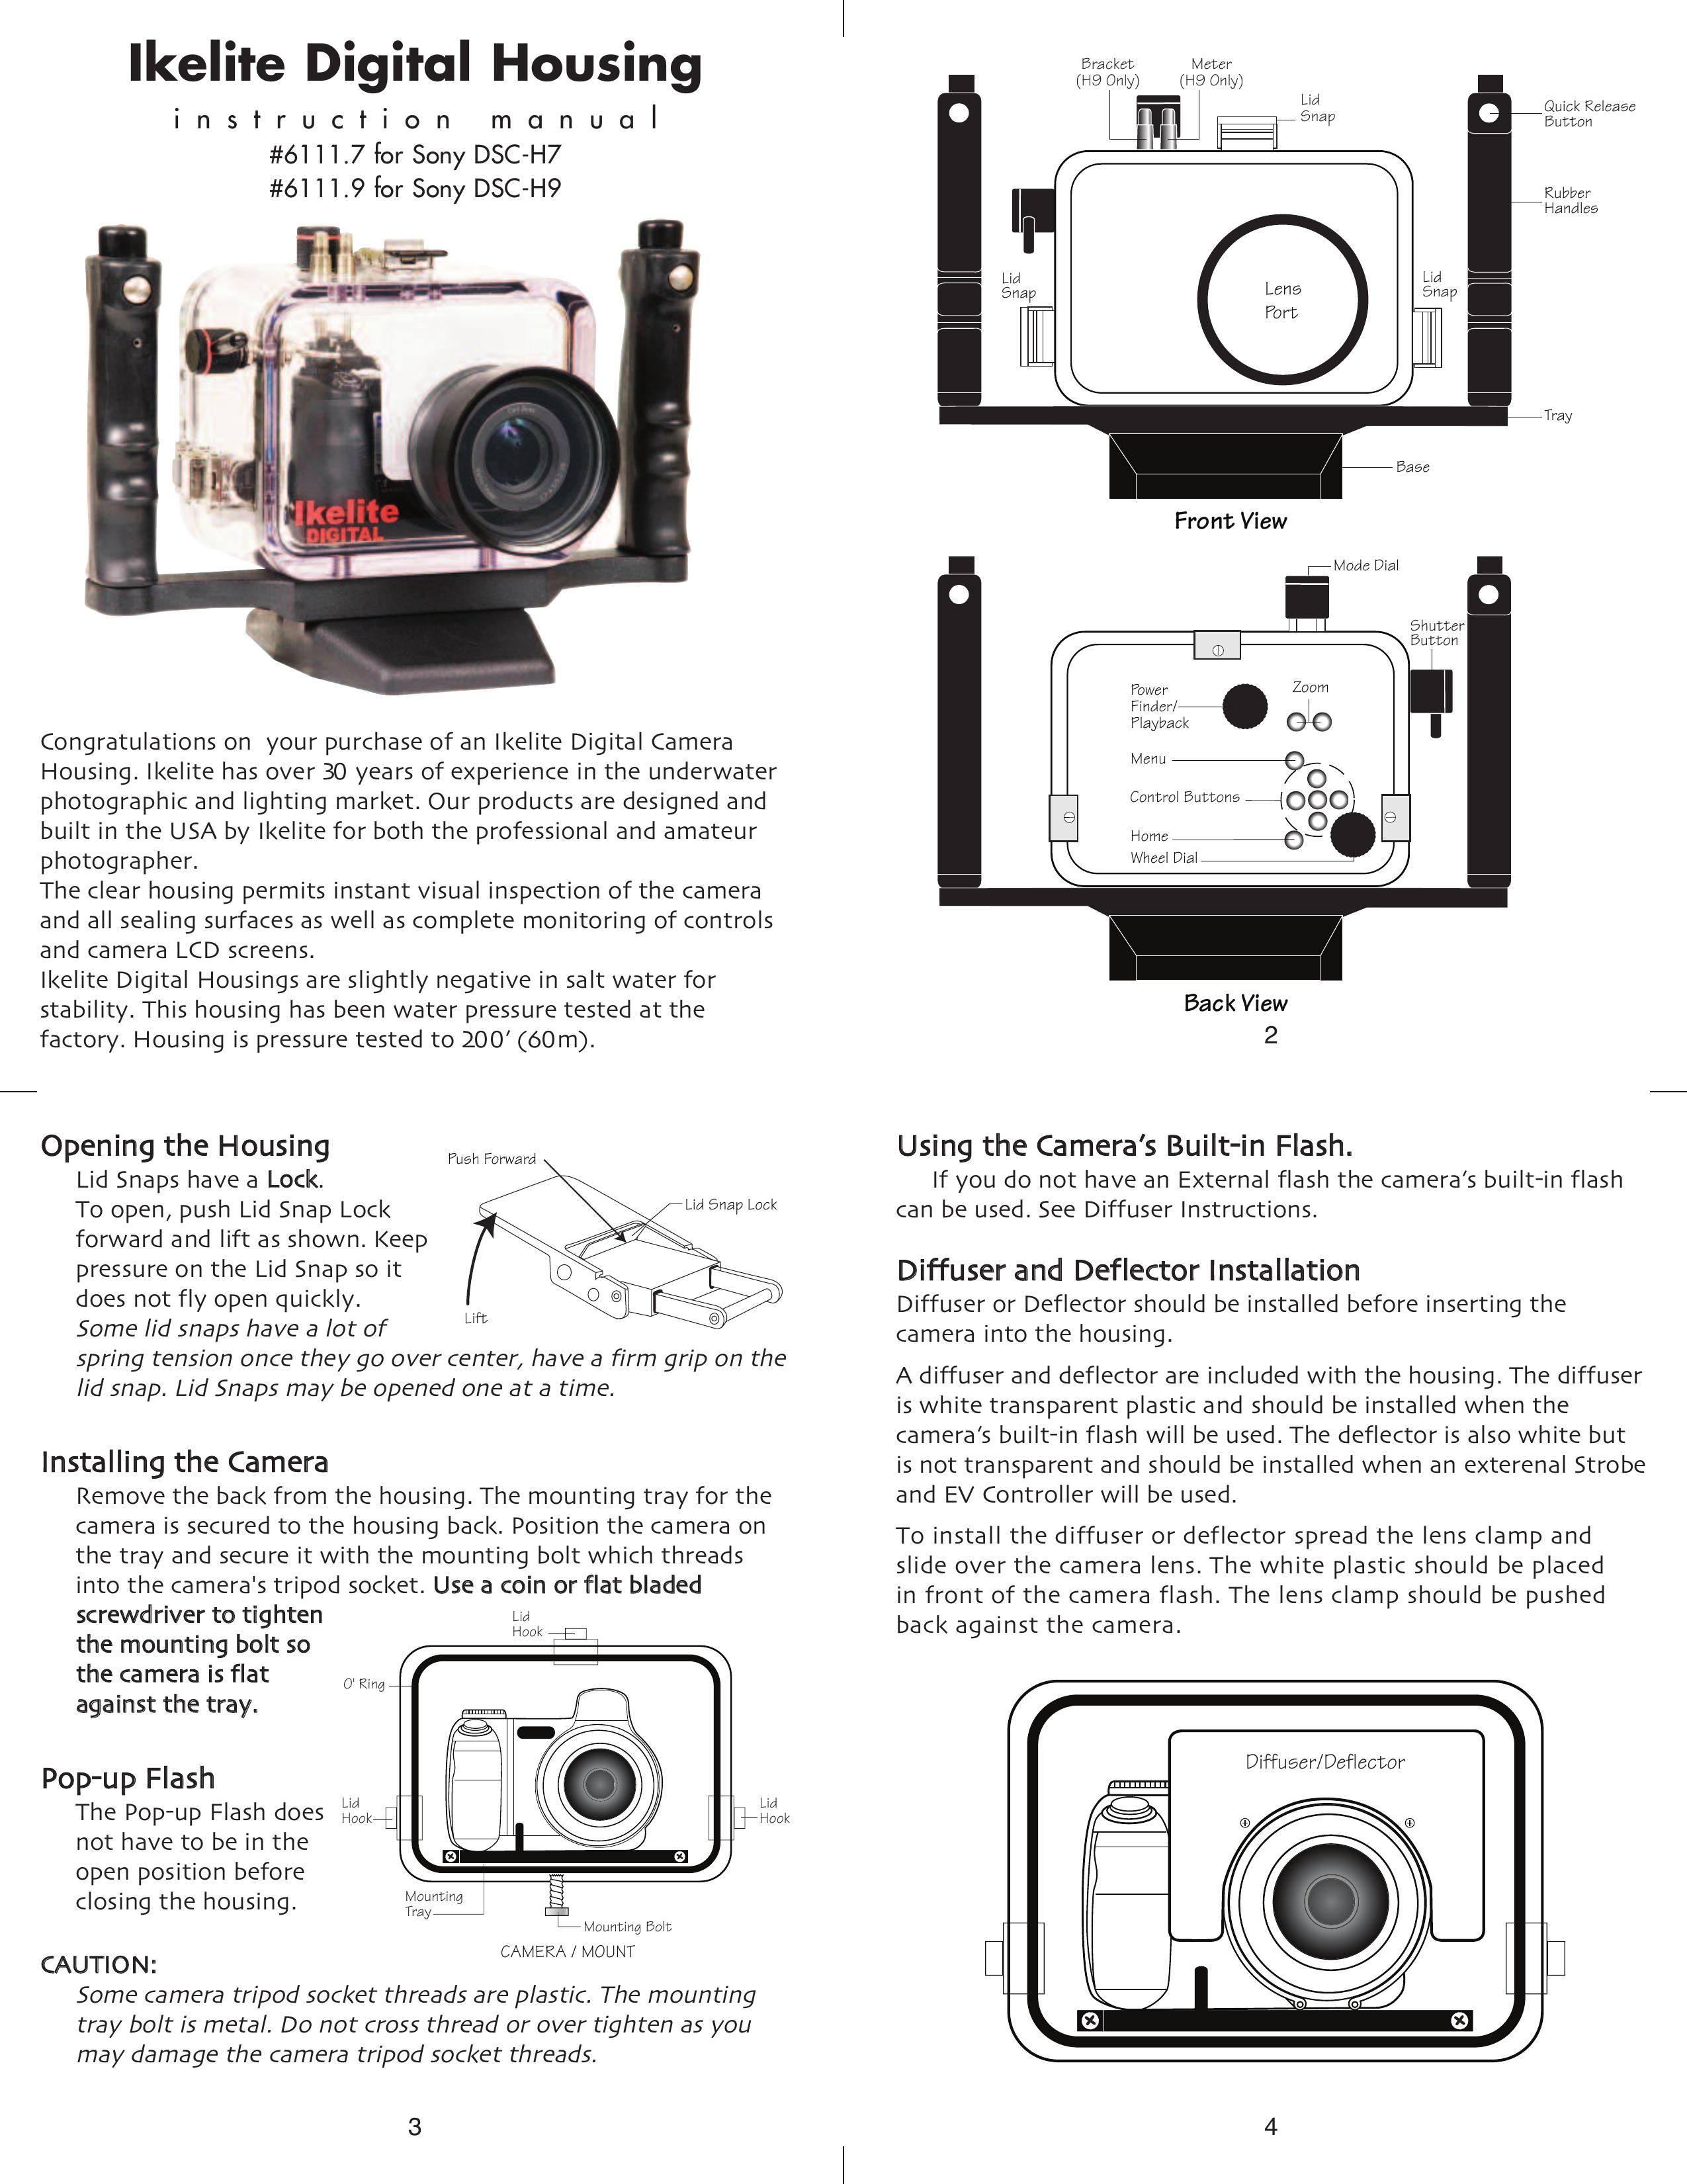 Ikelite DSC-H9 Digital Camera User Manual